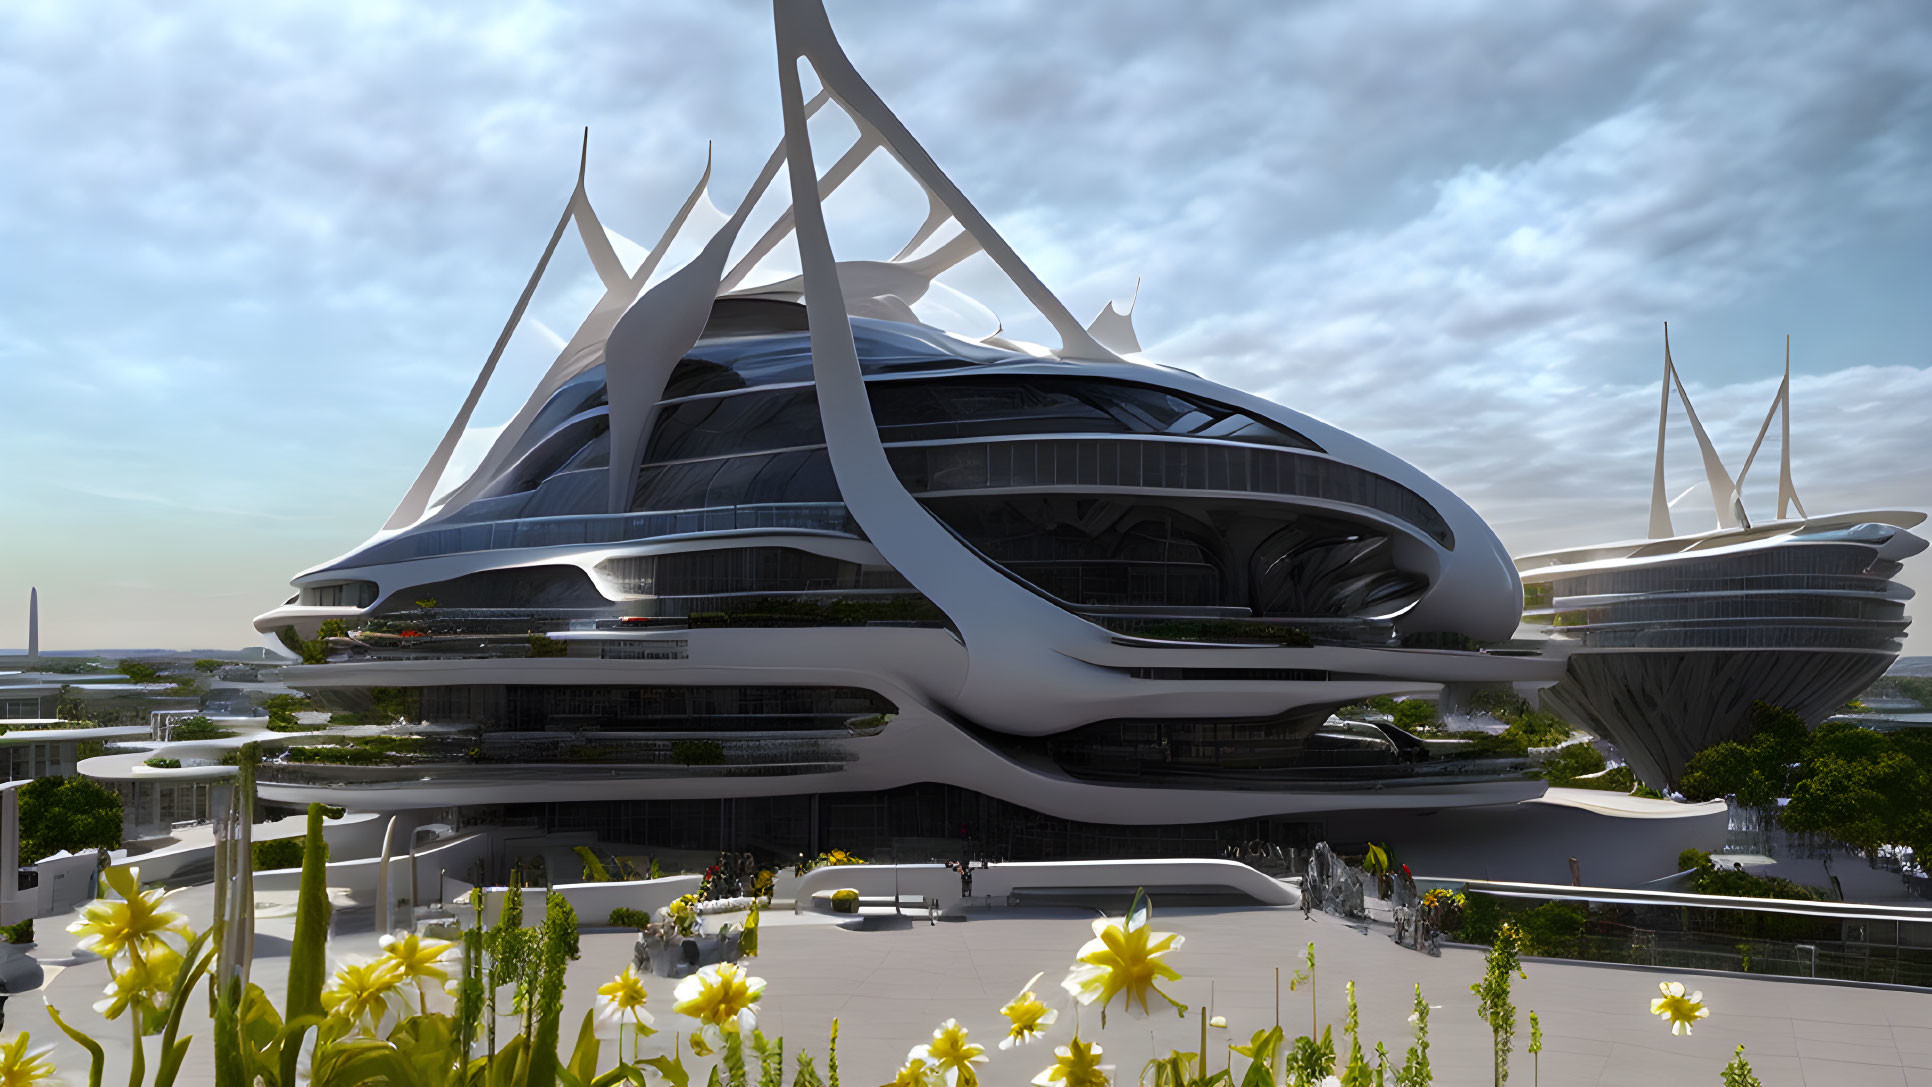 Architecture of the Future